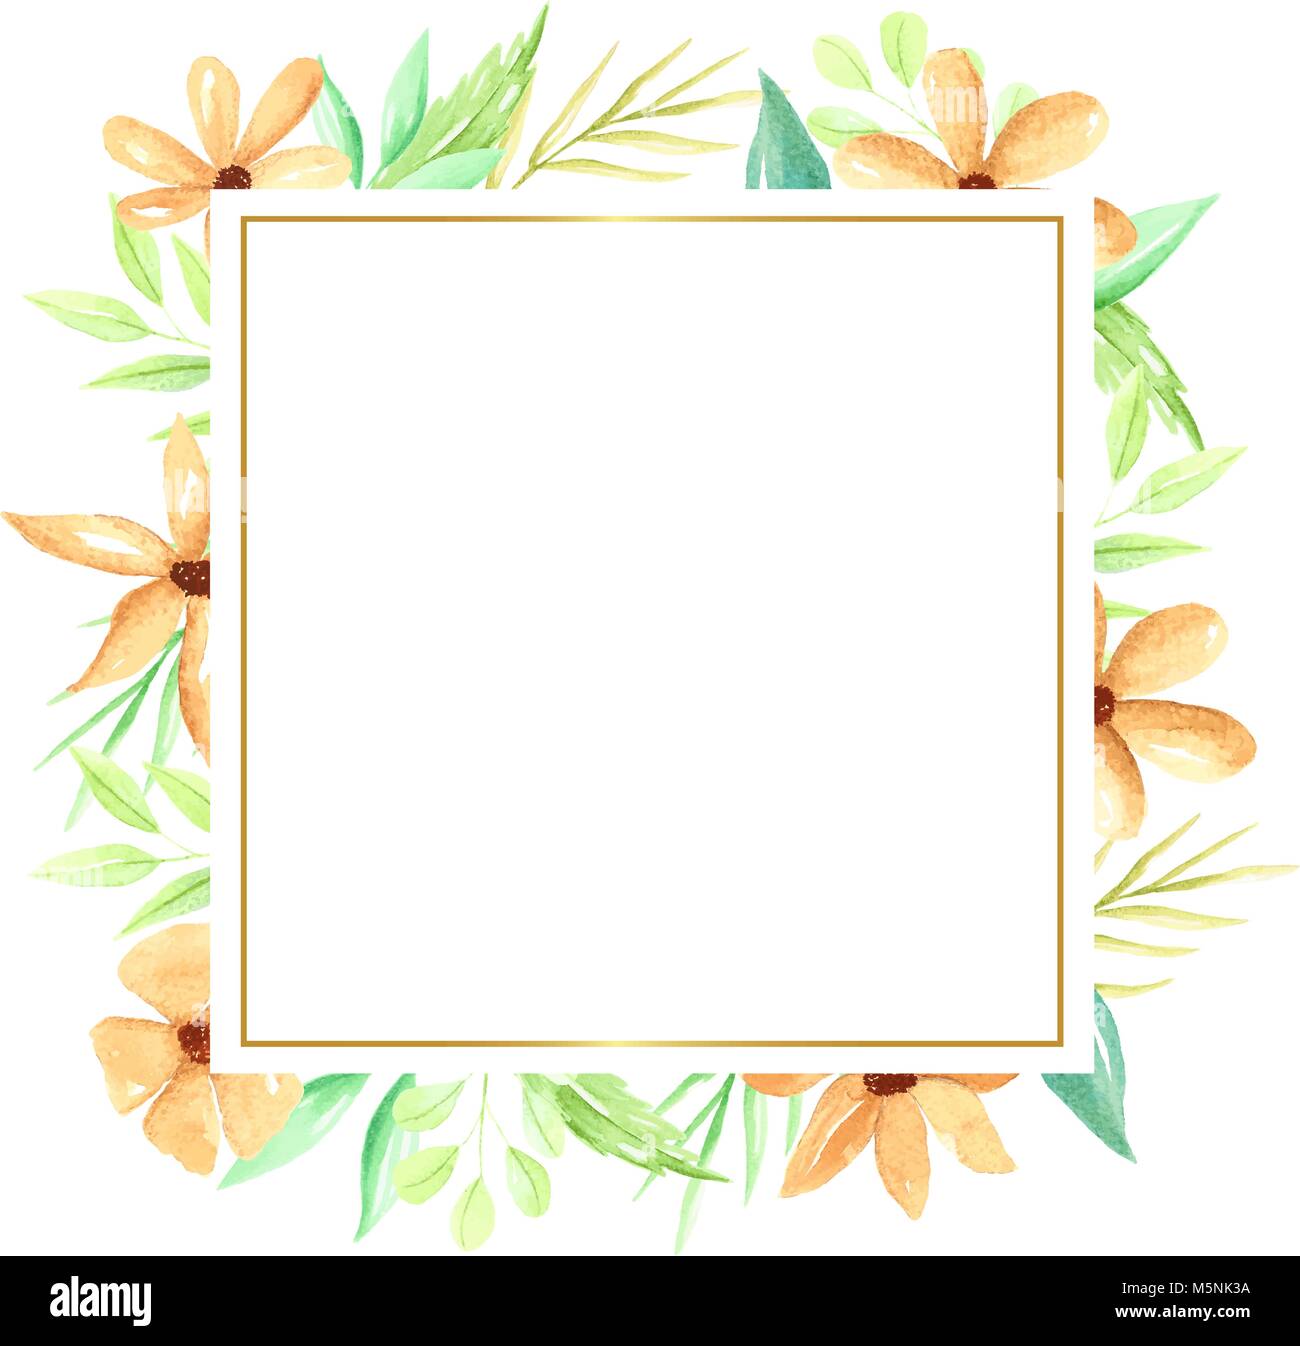 Cadre carré dessiné à la main avec des fleurs et des feuilles d'aquarelle, aquarelle orange flowers frame. Illustration à la main. Illustration de Vecteur